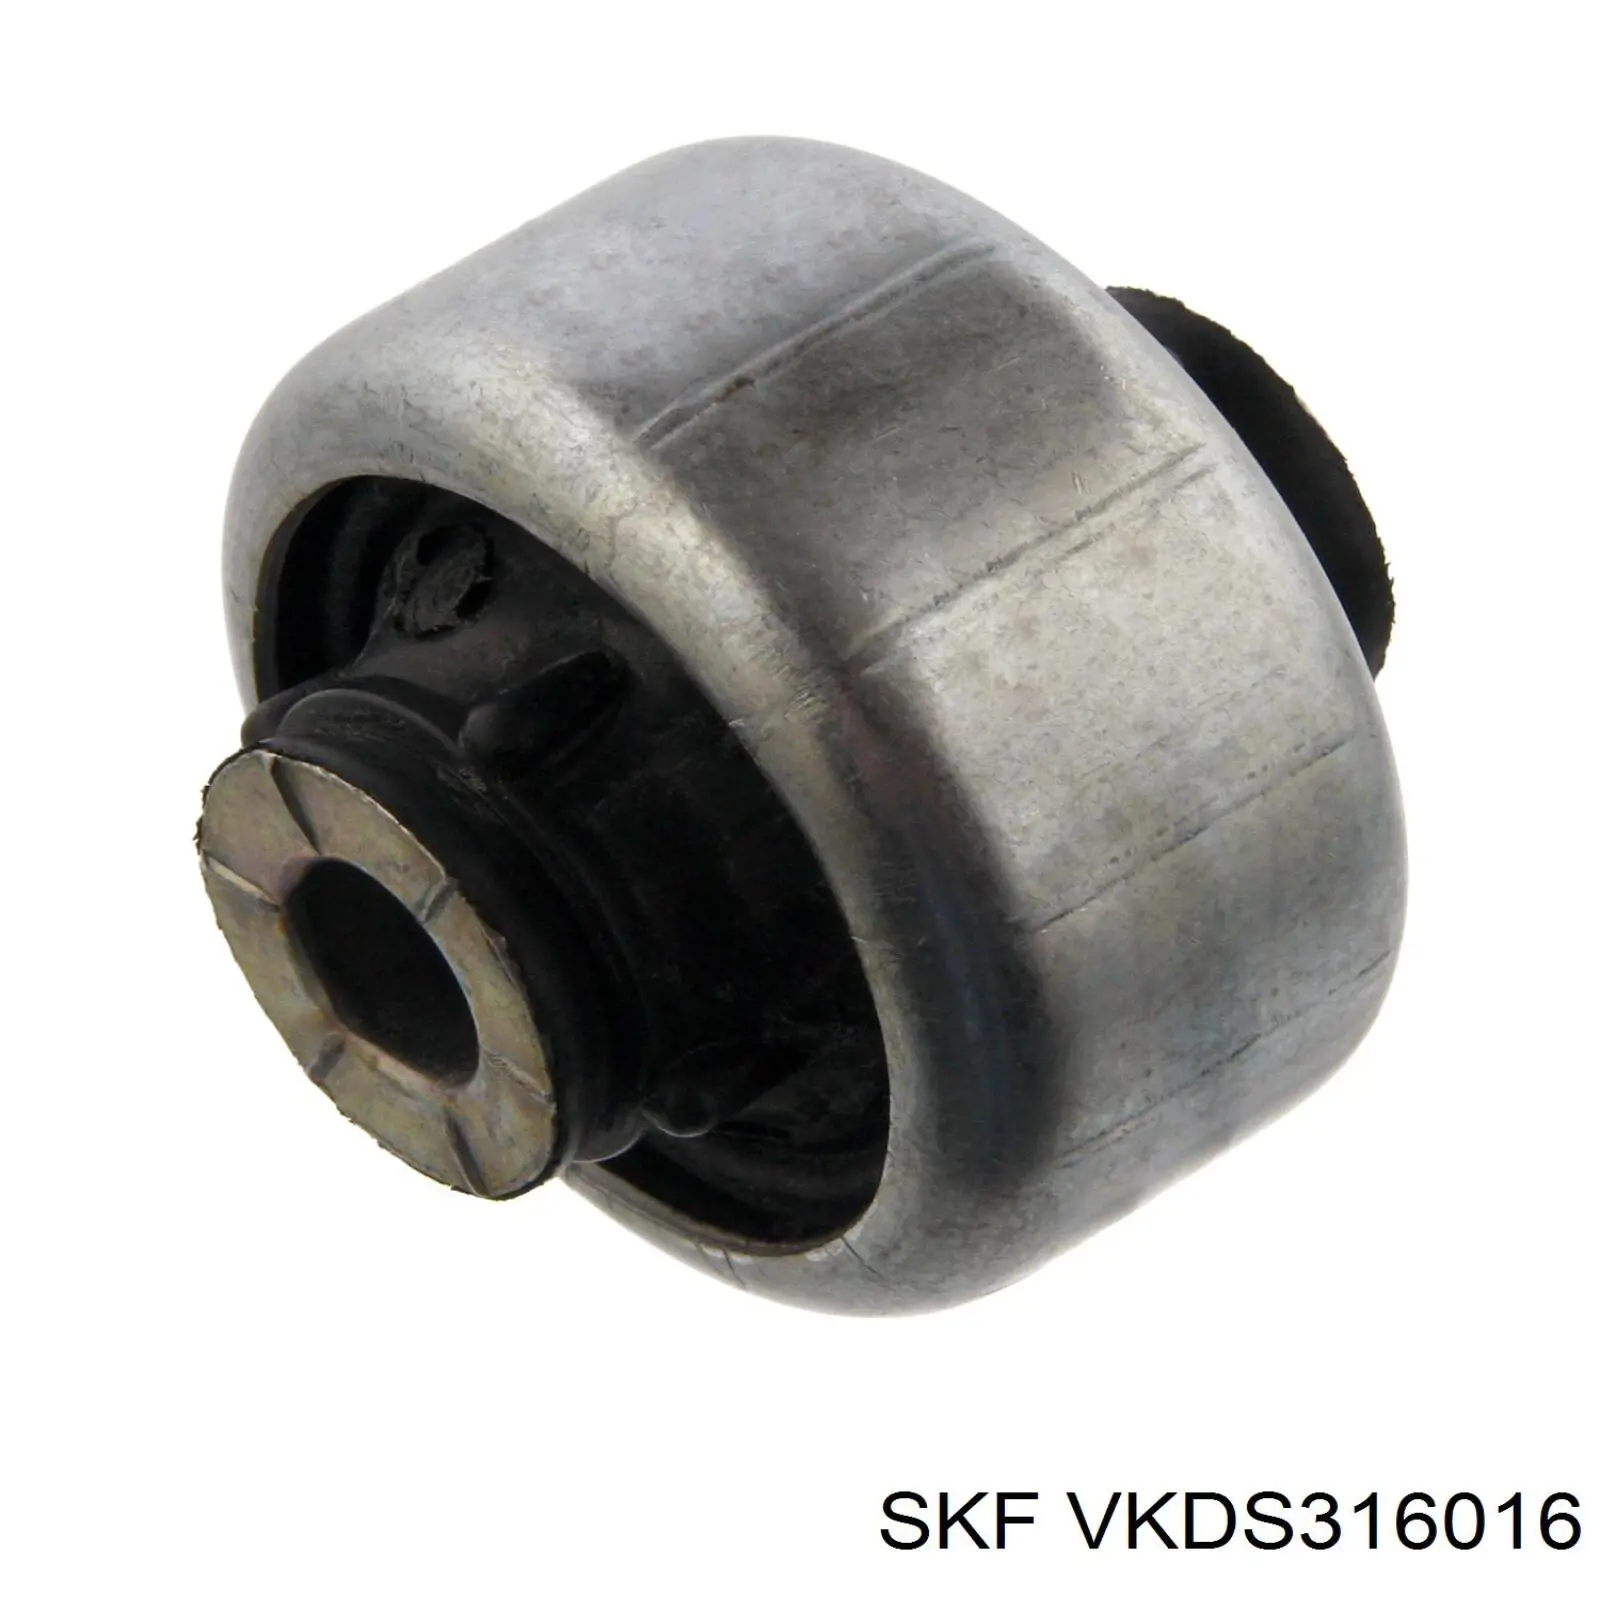 VKDS 316016 SKF rótula de suspensión inferior izquierda